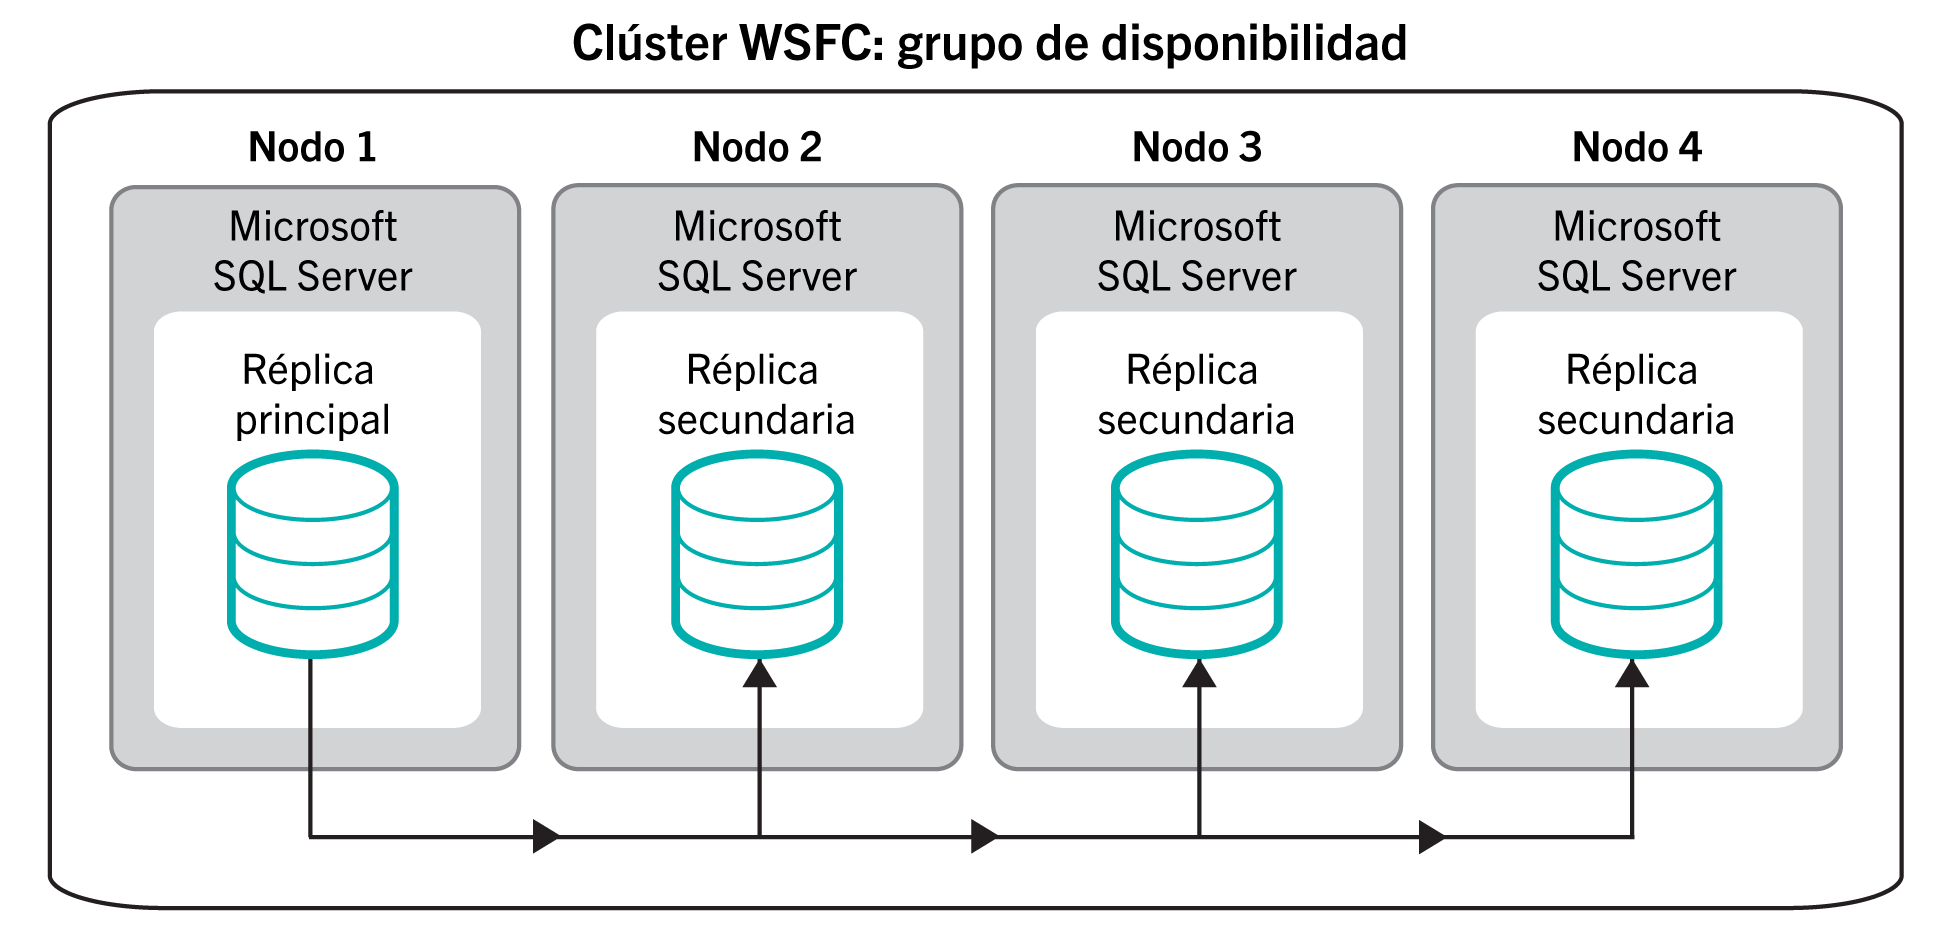 En este diagrama se muestran varios nodos de Microsoft SQL
  Server en un grupo de disponibilidad para la alta disponibilidad de la base de datos